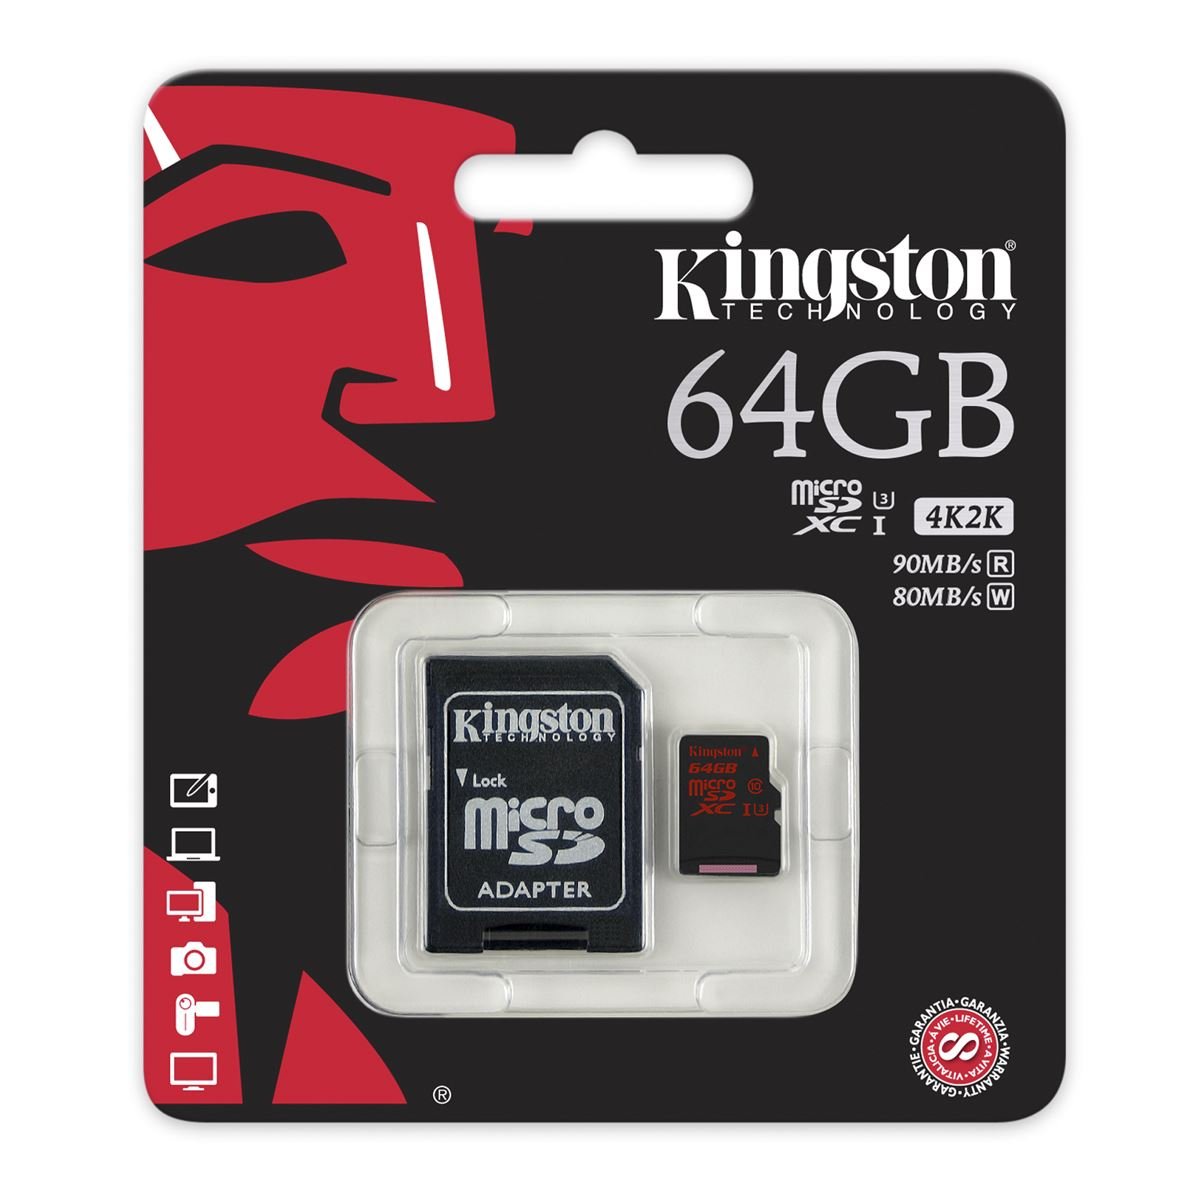 Tarjeta Kingston 64GB Micro SDCA3 C10